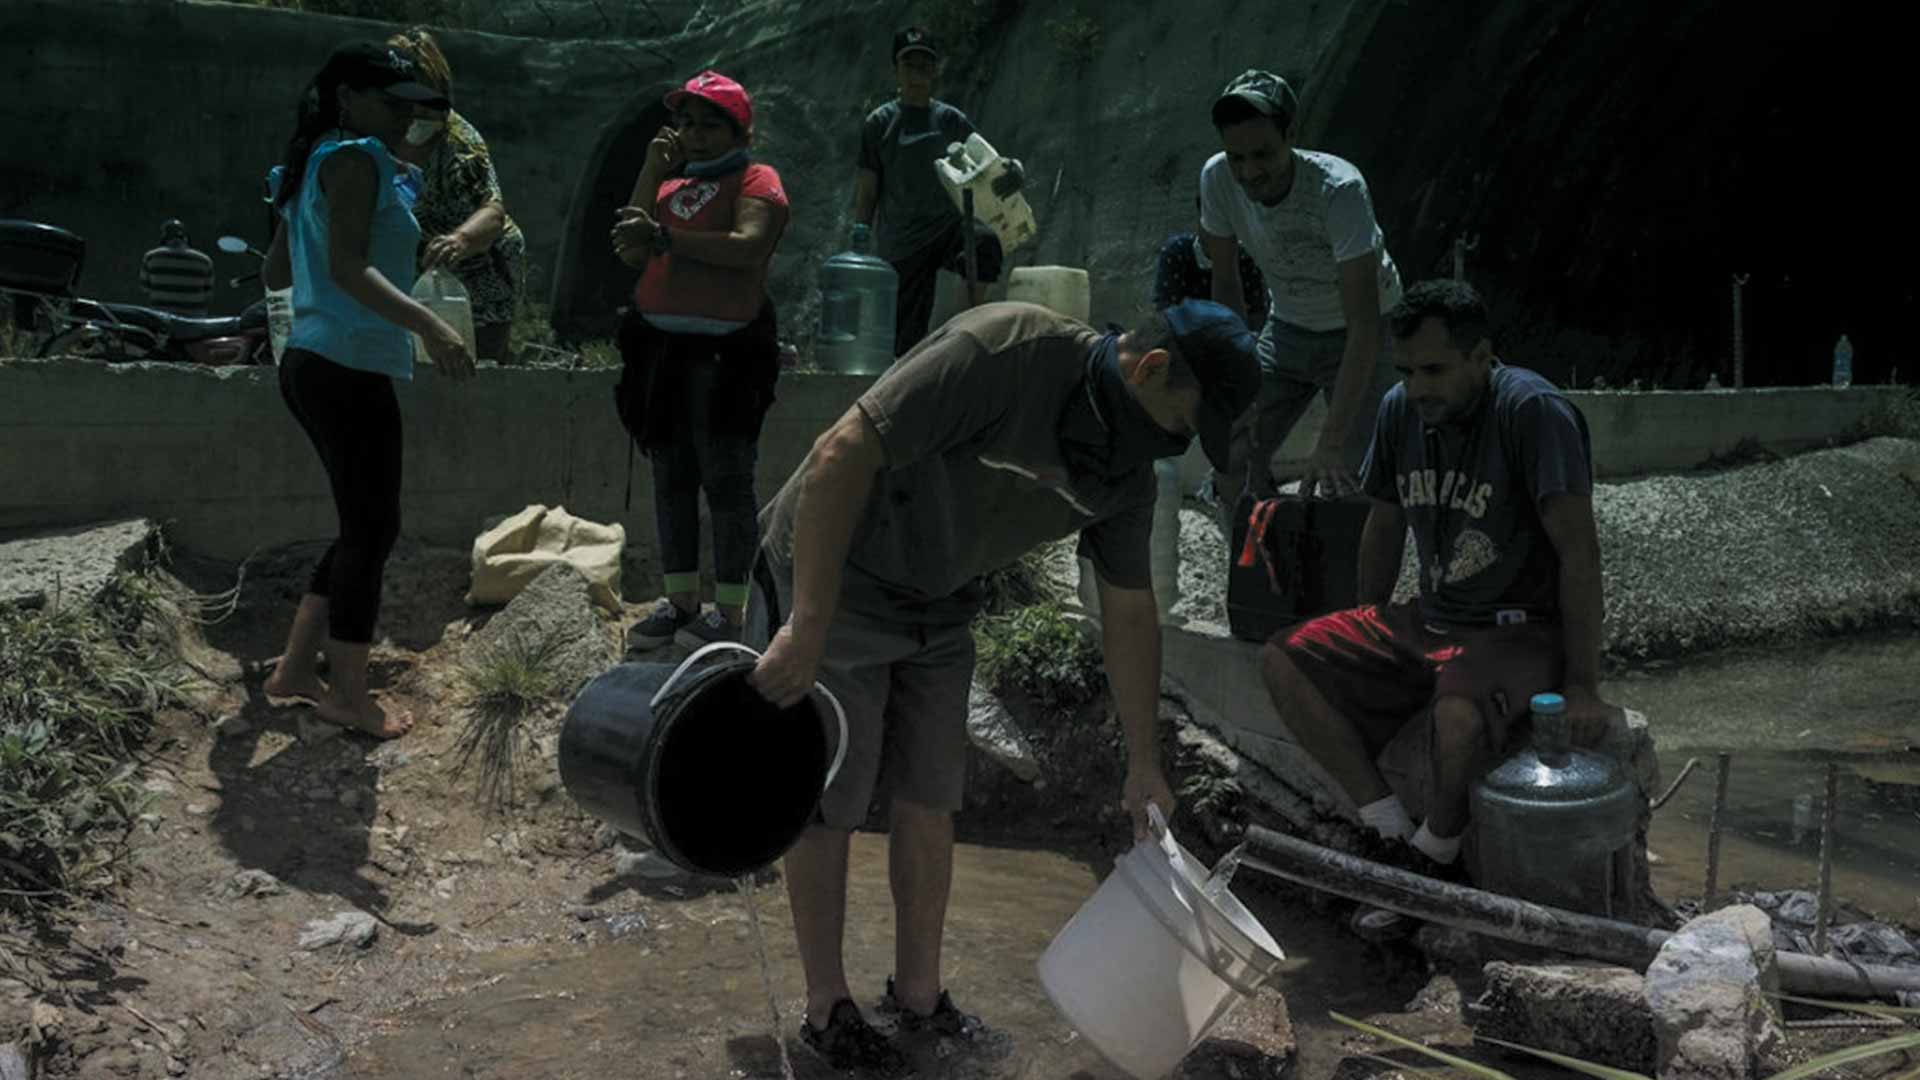 Por qué no hay agua en Venezuela - Noticiero de Venezuela